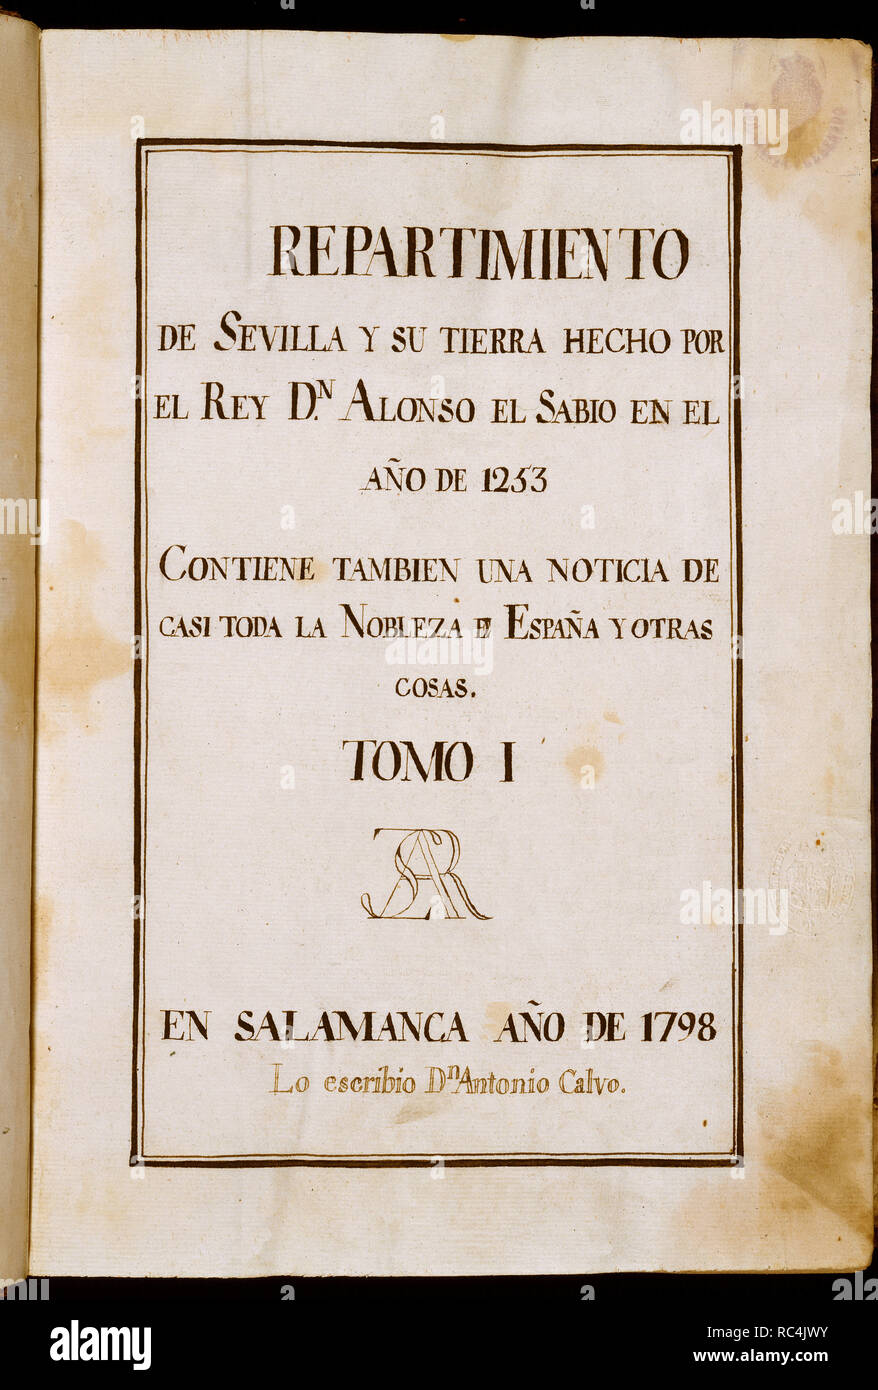 REPARTIMIENTO DE SEVILLA Y SU TIERRA POR ALFONSO X EL SABIO EN EL AÑO 1253 - TOMO I - 1798. Author: CALVO, ANTONIO. Location: SENADO-BIBLIOTECA-COLECCION. MADRID. Stock Photo